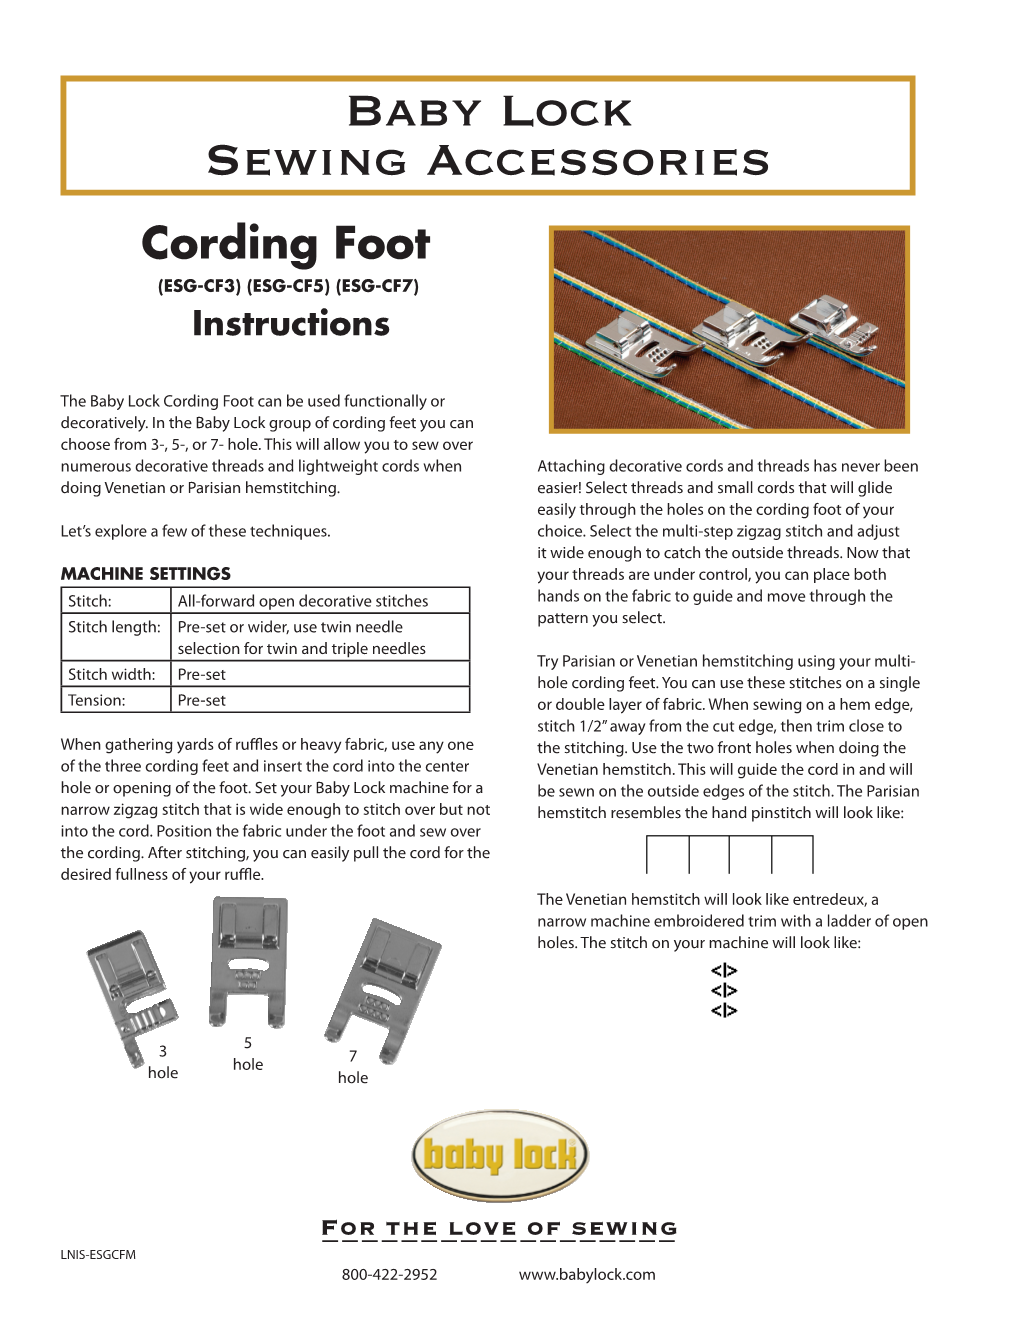 Cording Foot (ESG-CF3) (ESG-CF5) (ESG-CF7) Instructions